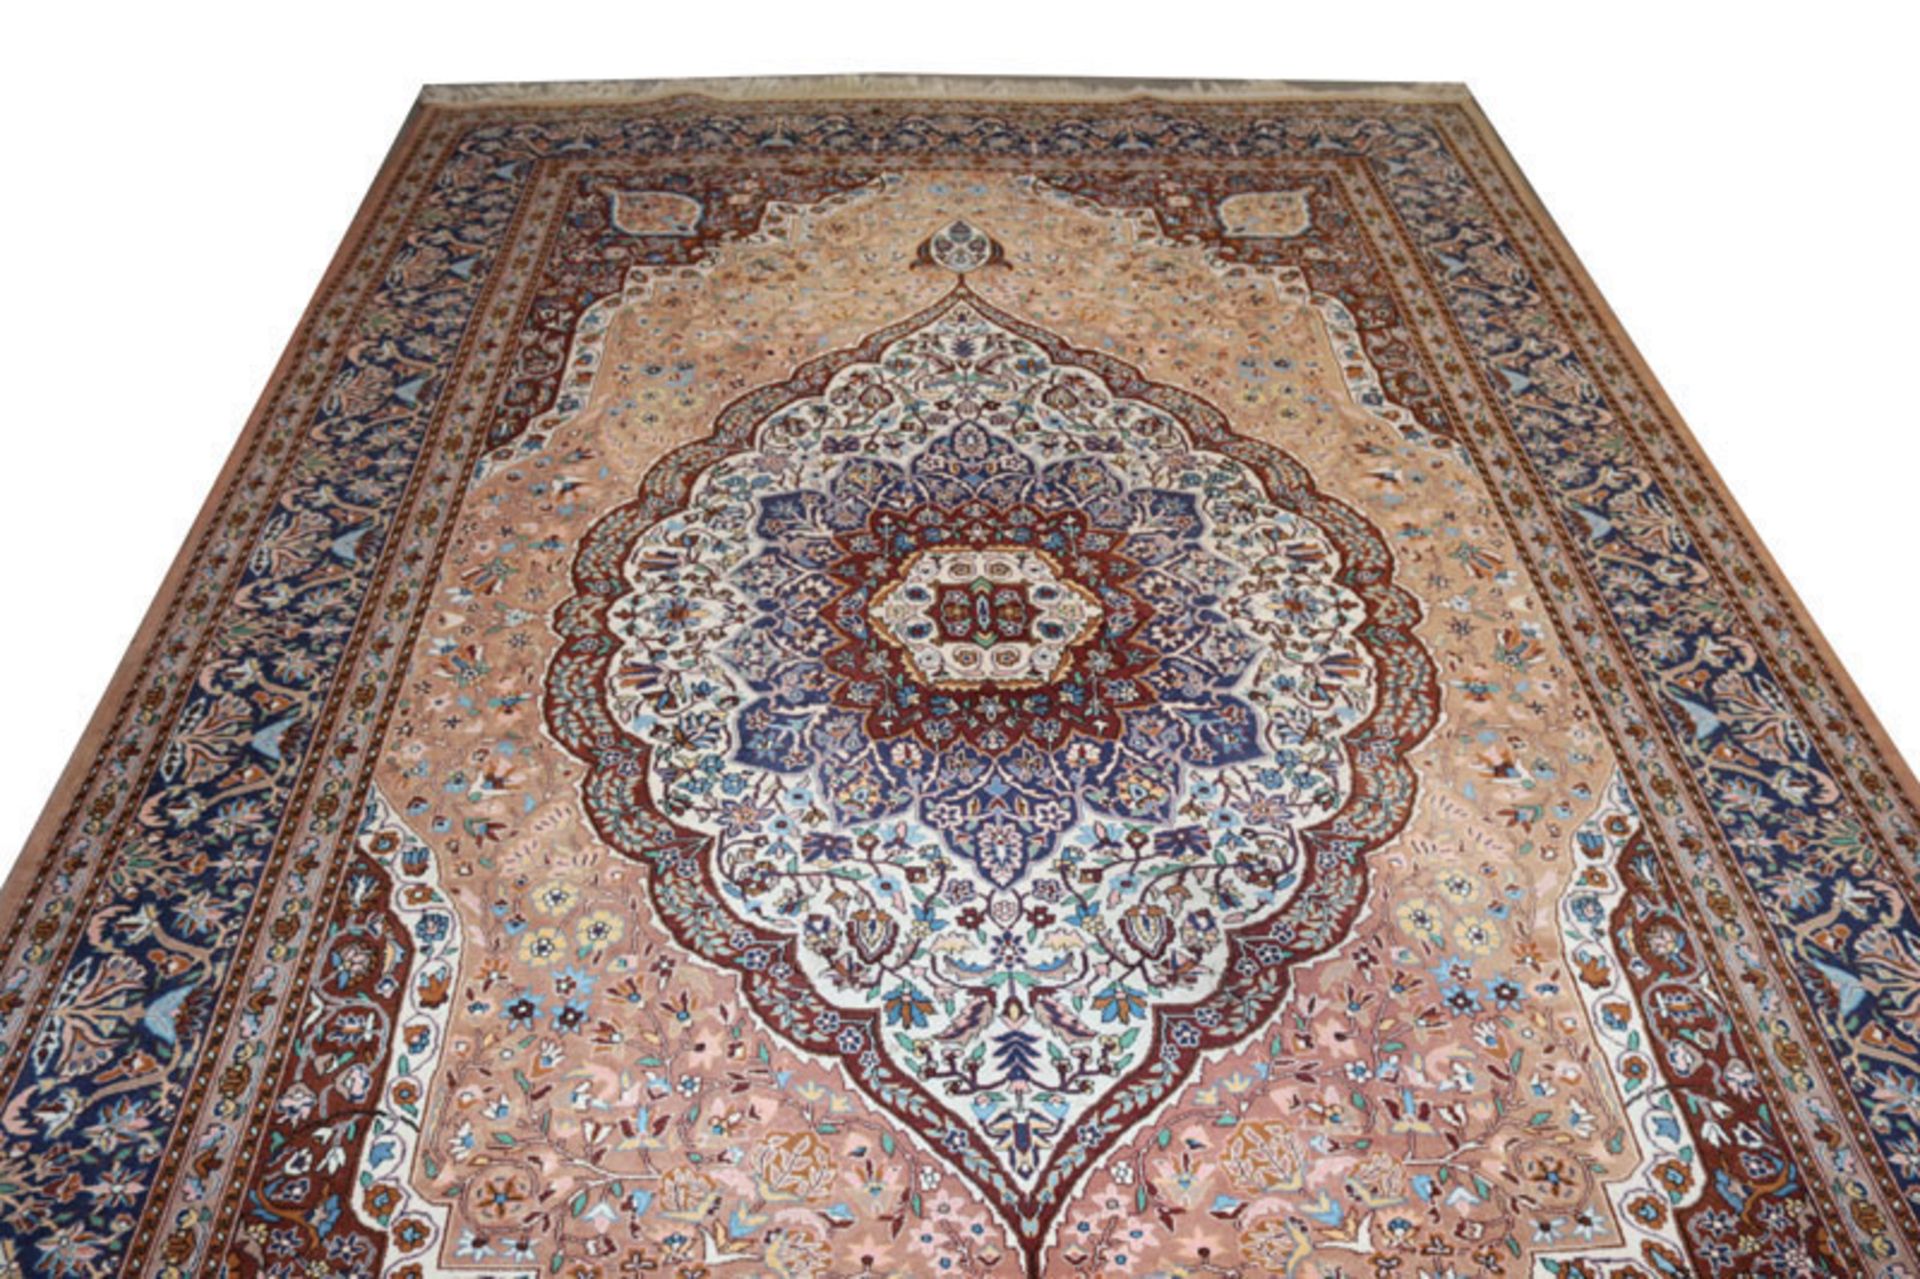 Teppich, Bidjar, rostrot/beige/blau, Gebrauchsspuren, teils abgetreten, 320 cm x 217 cm, Abholung